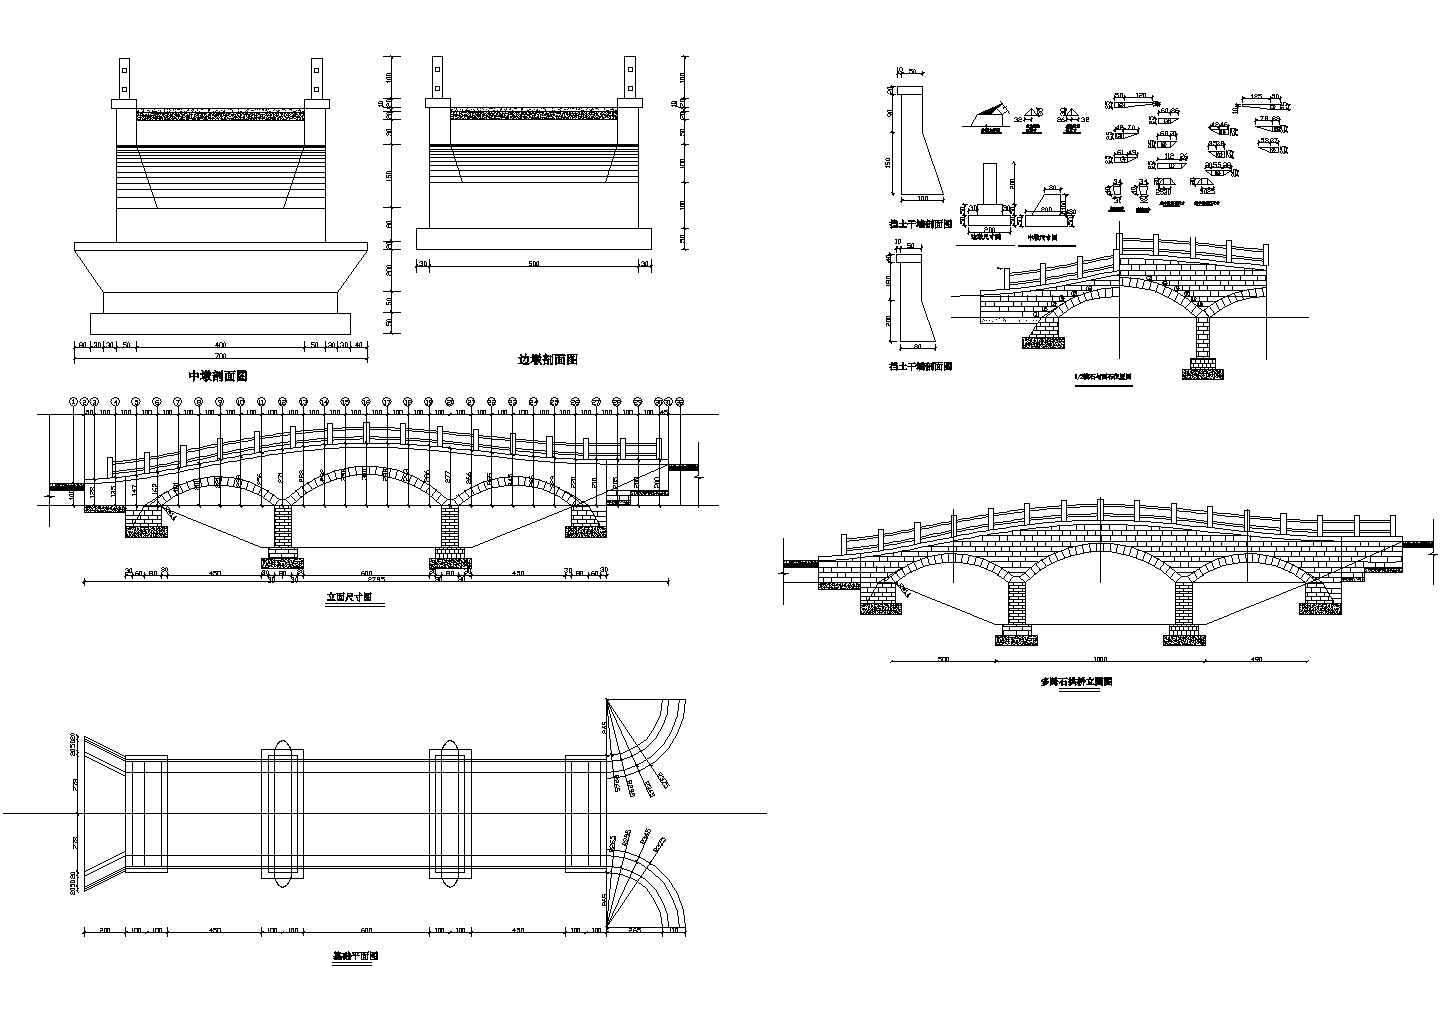 多跨径石拱桥加固改造工程全套施工图(18张)